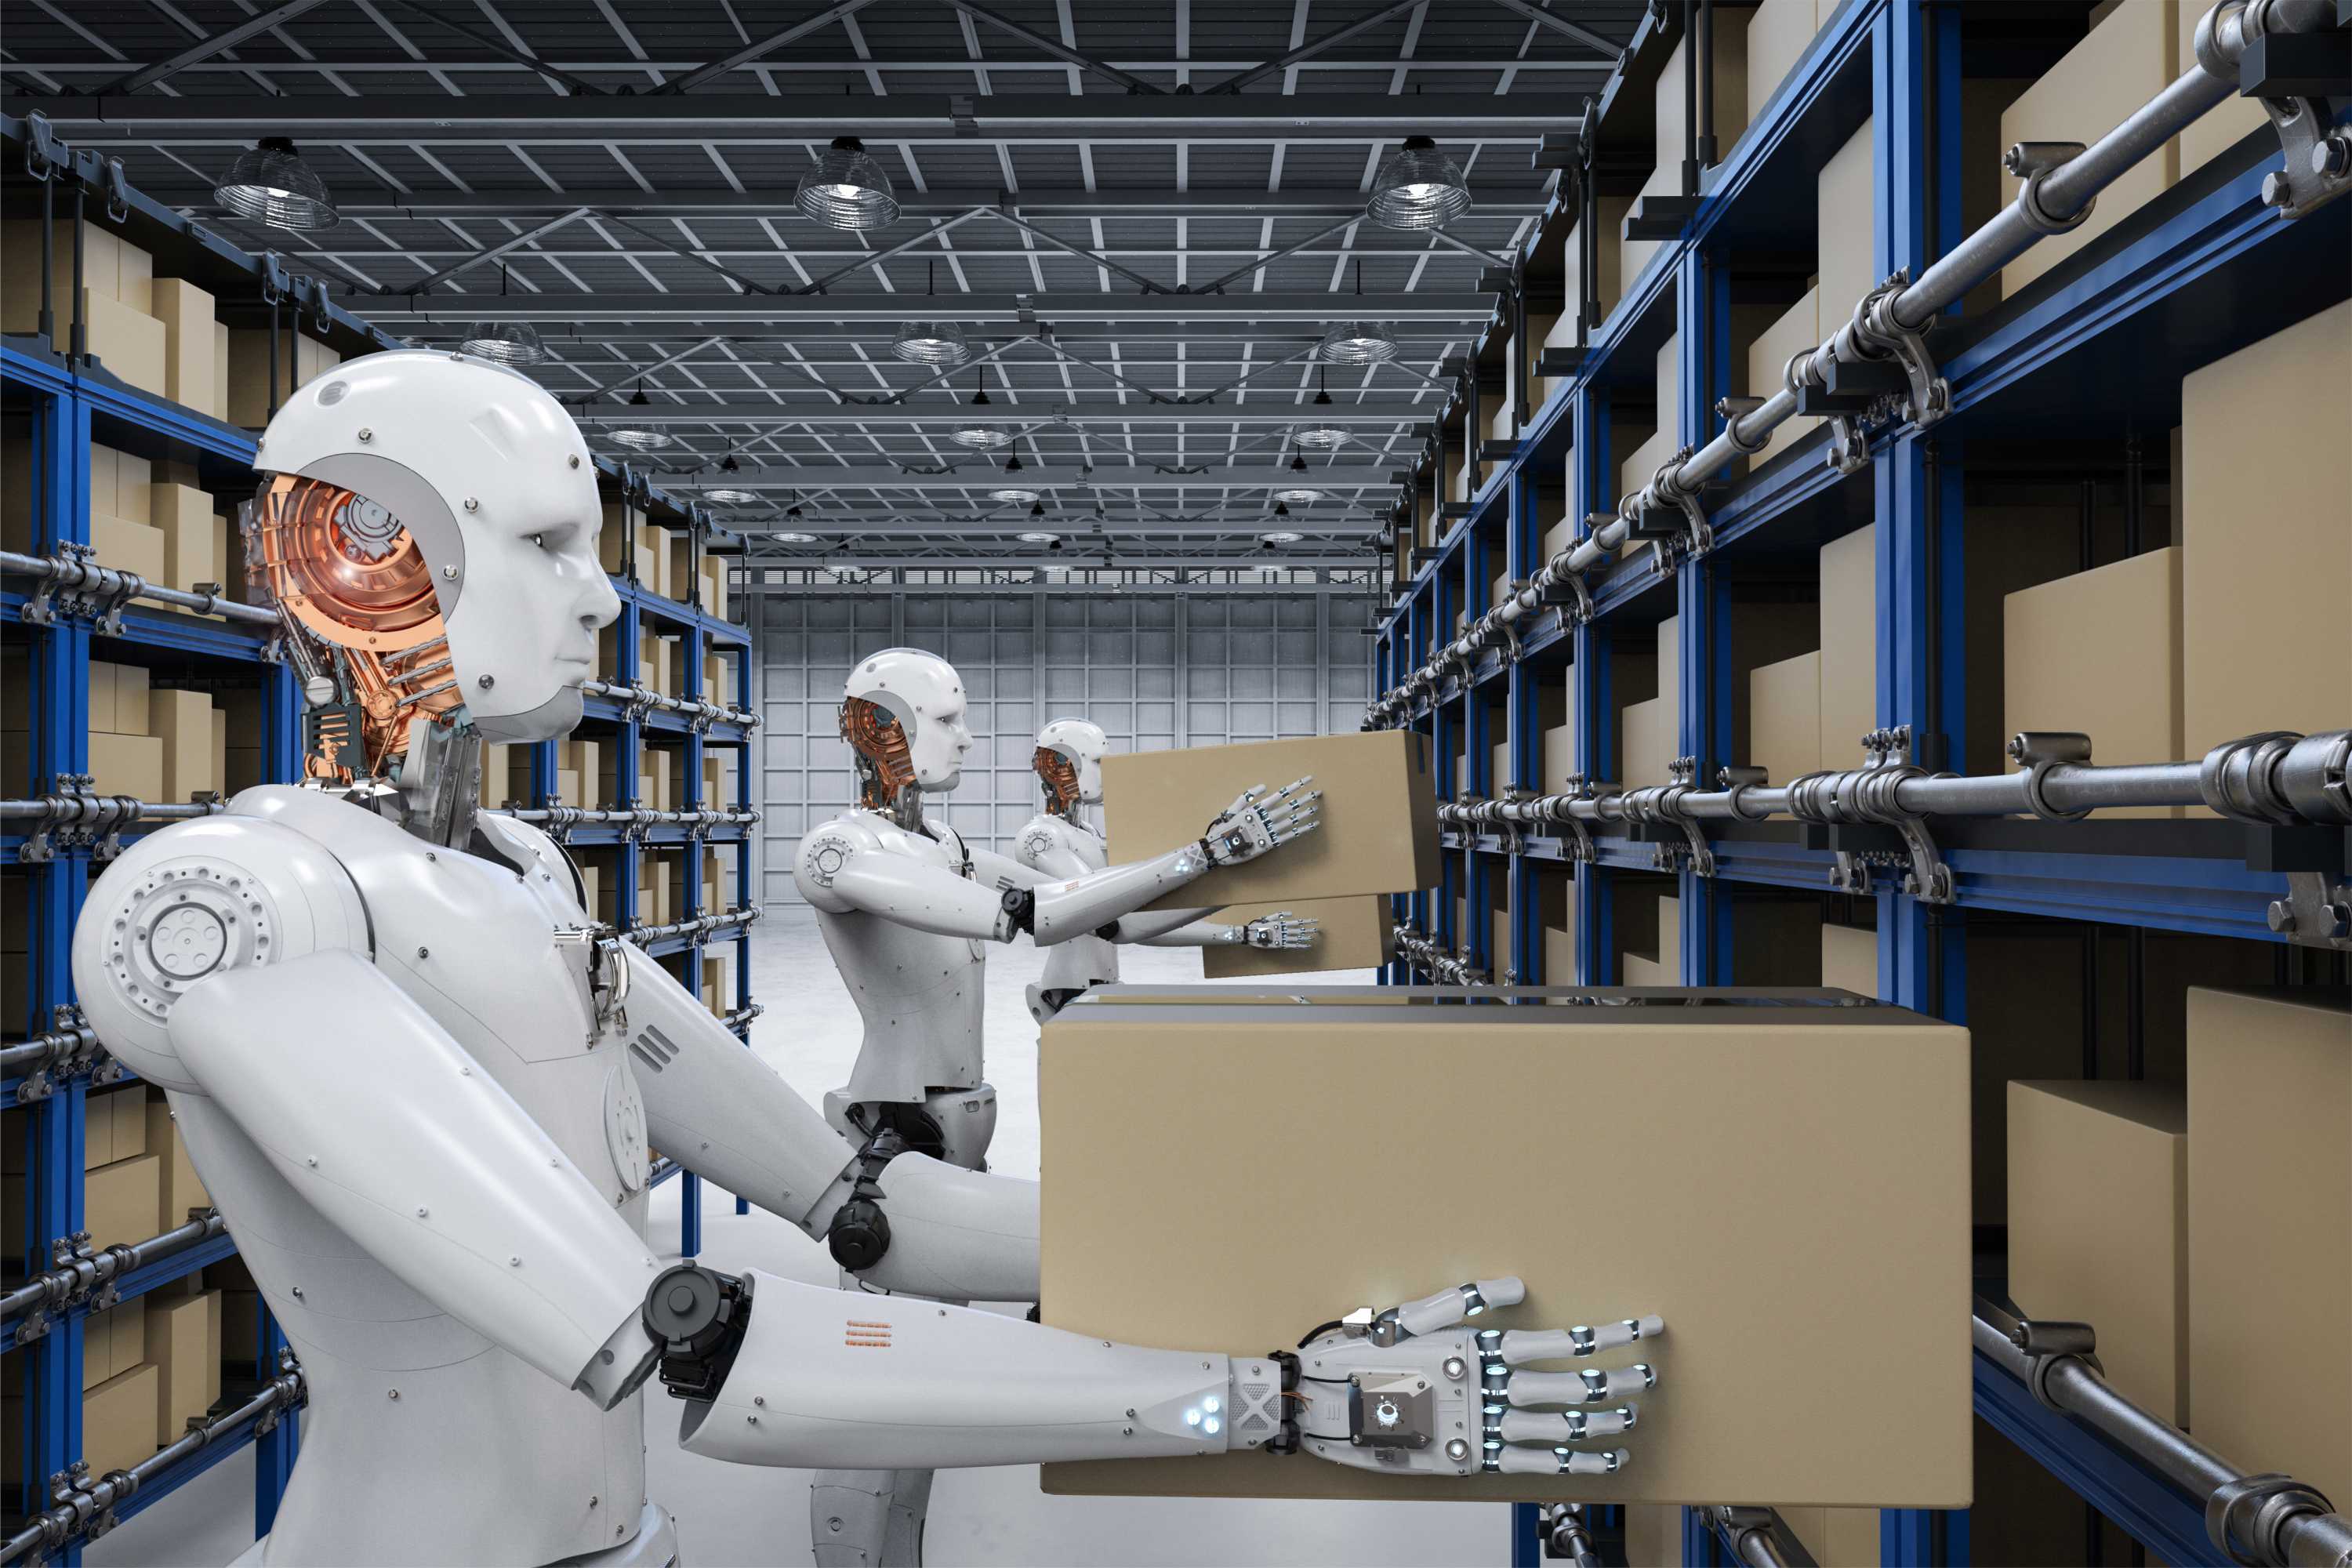 Groei van robotisering in Nederlandse warehouses